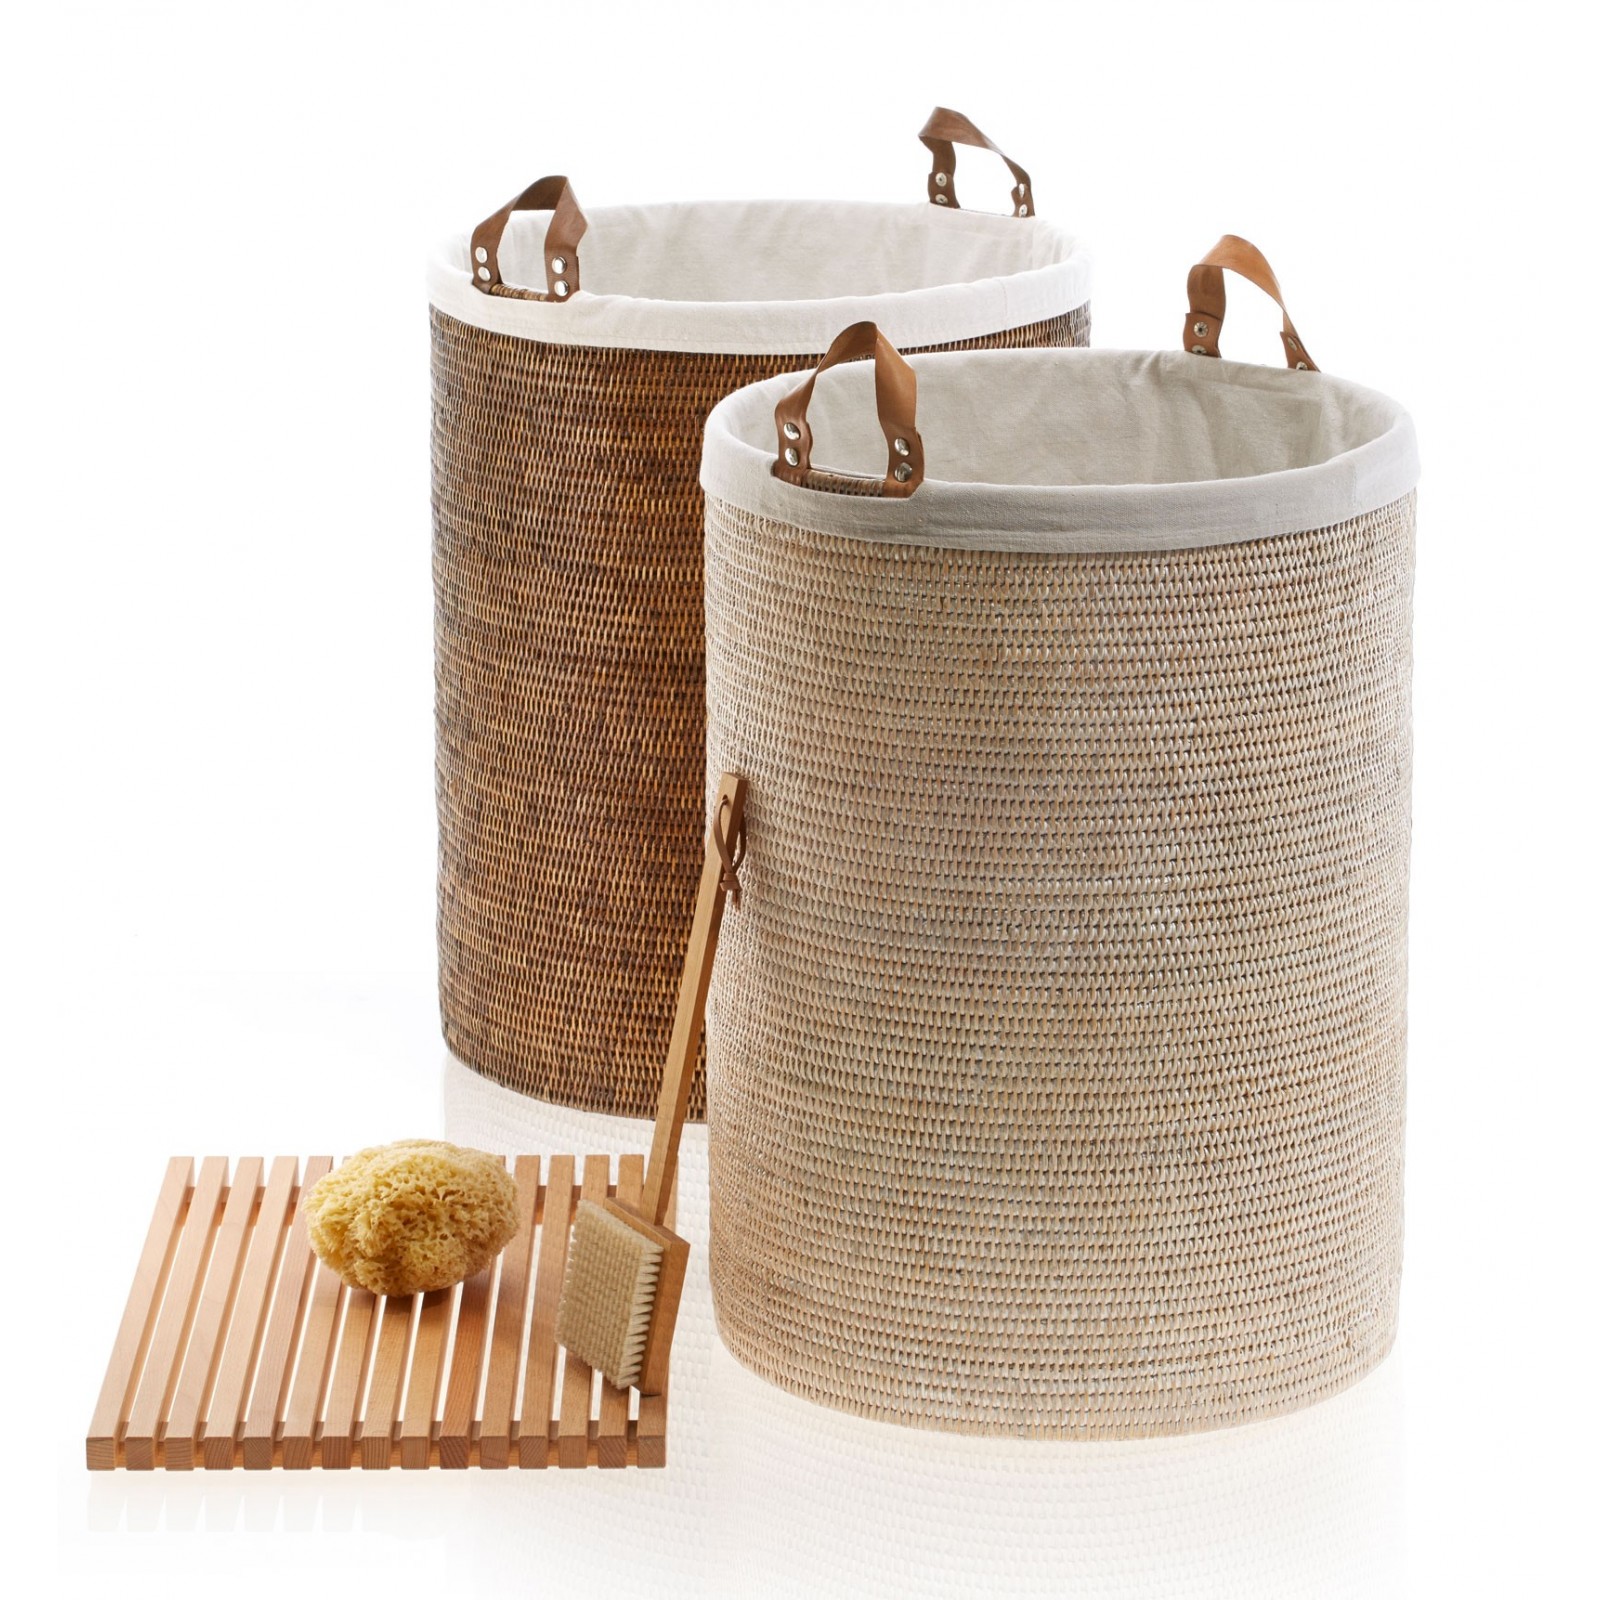 Basket accessori in rattan by Decor Walther - contecom